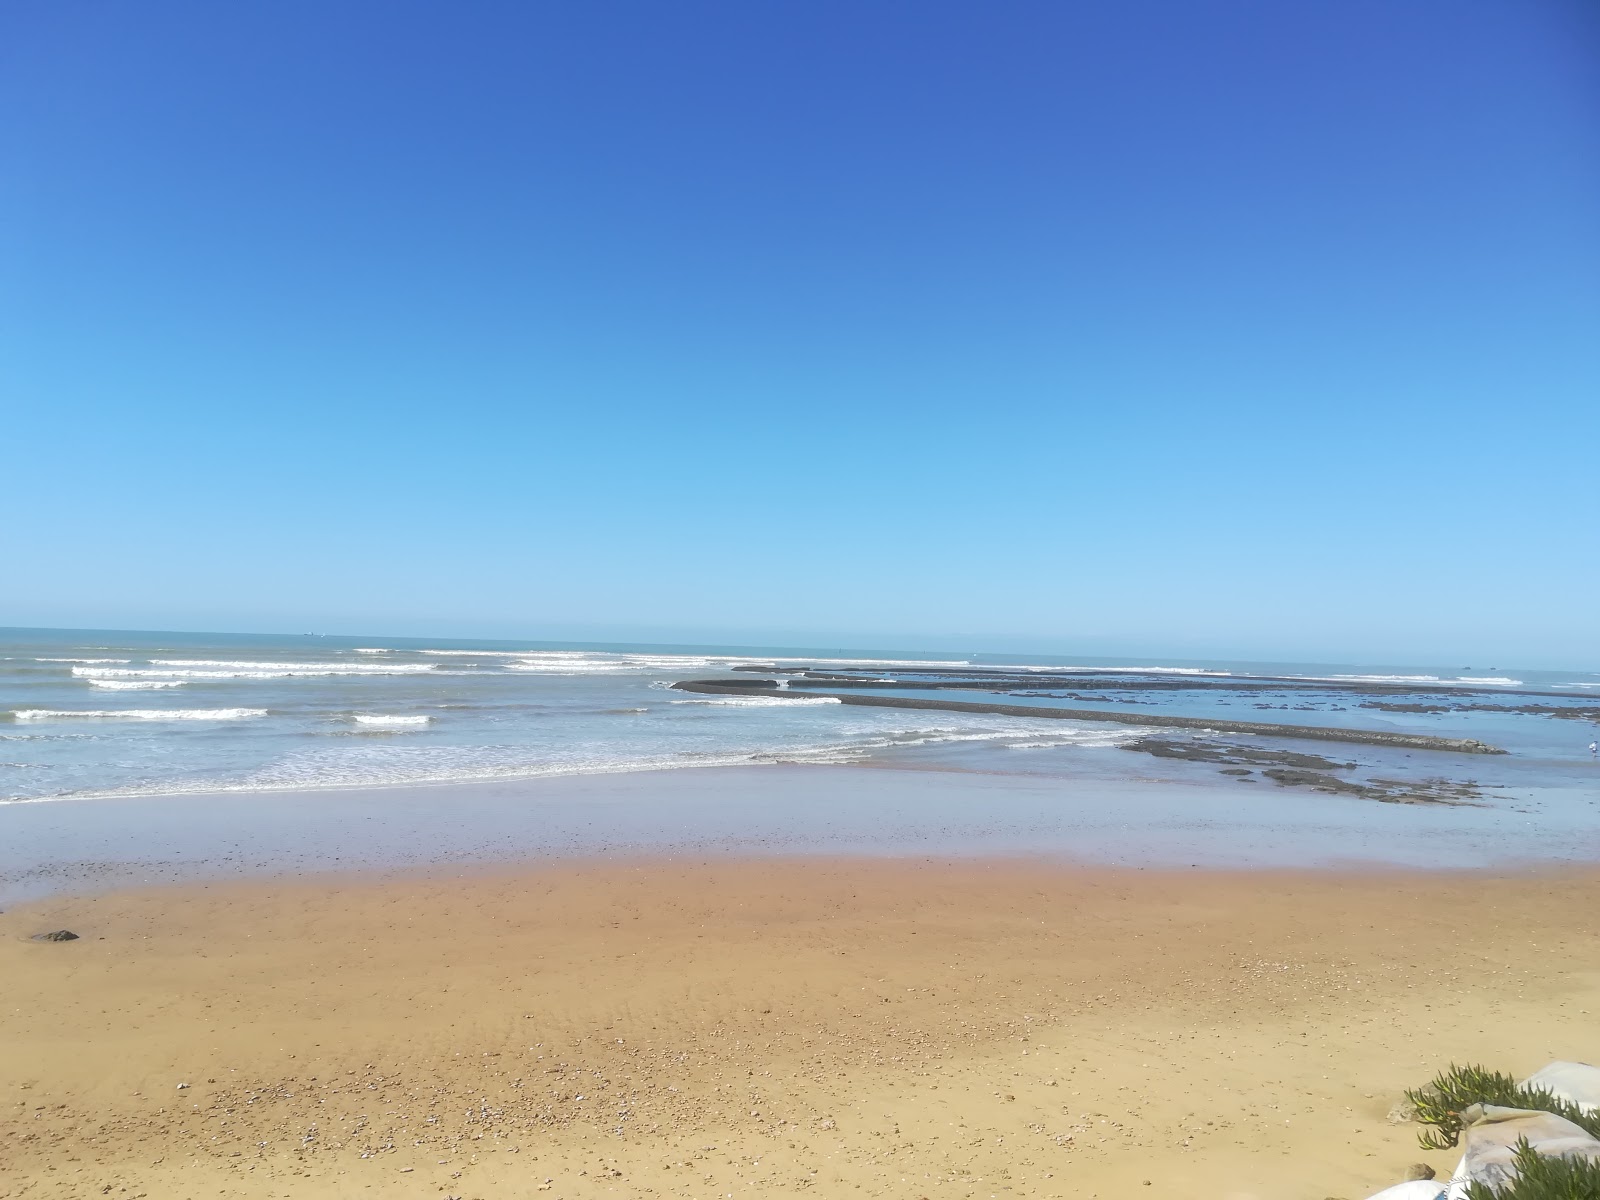 Montijo beach'in fotoğrafı geniş plaj ile birlikte